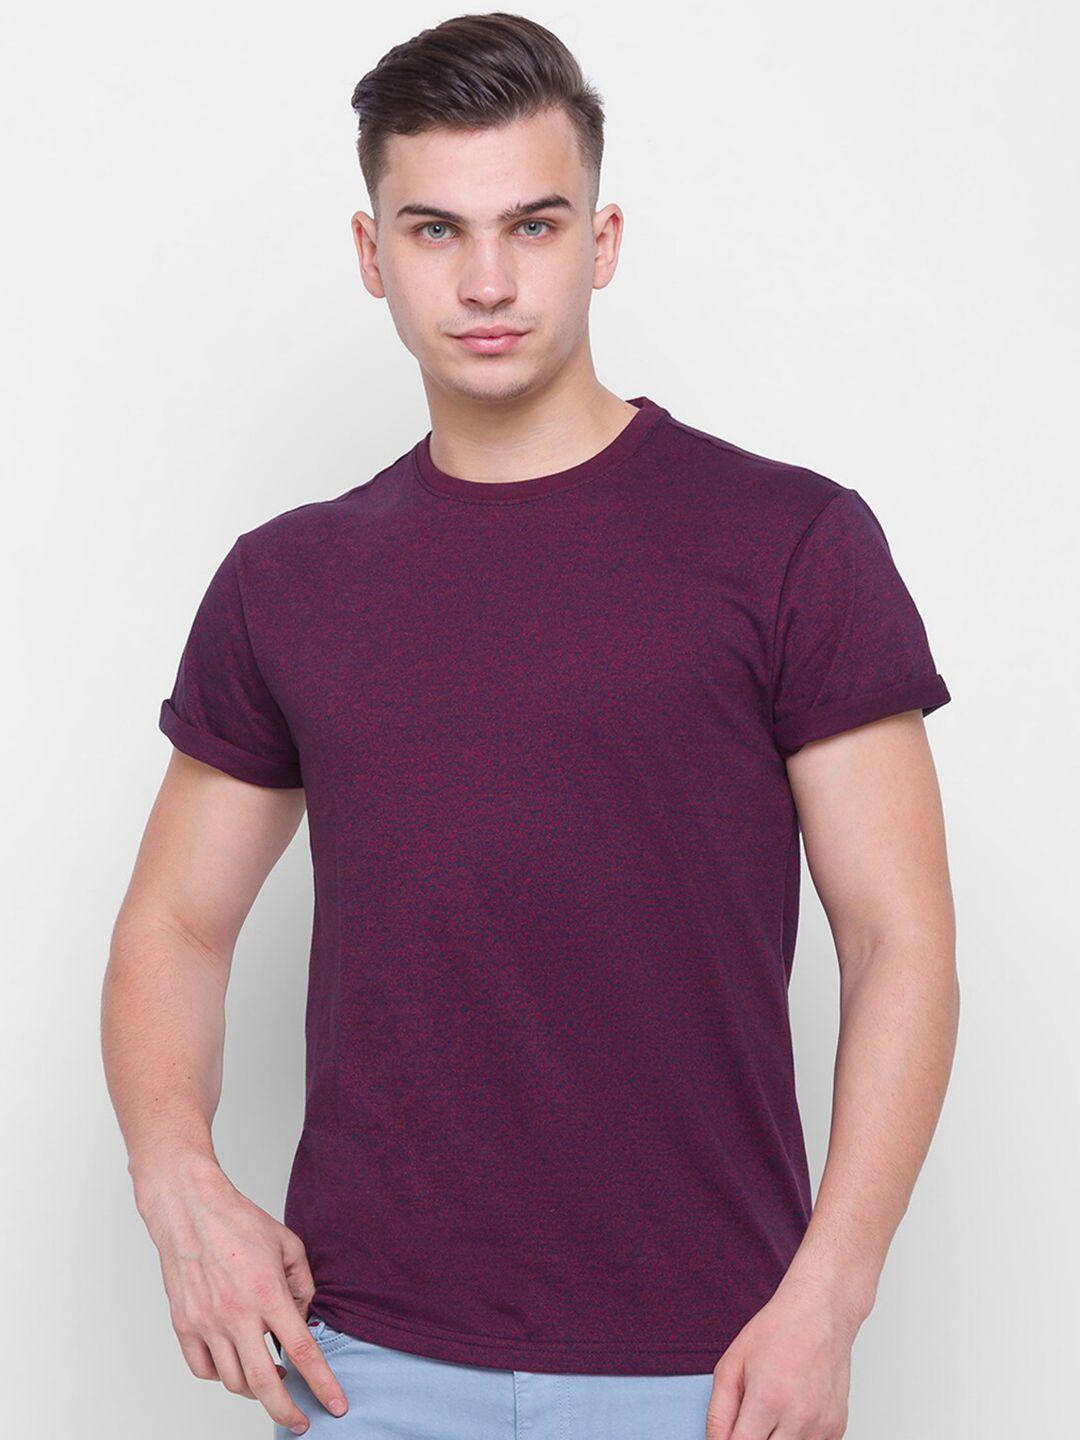 globus men maroon self-design t-shirt